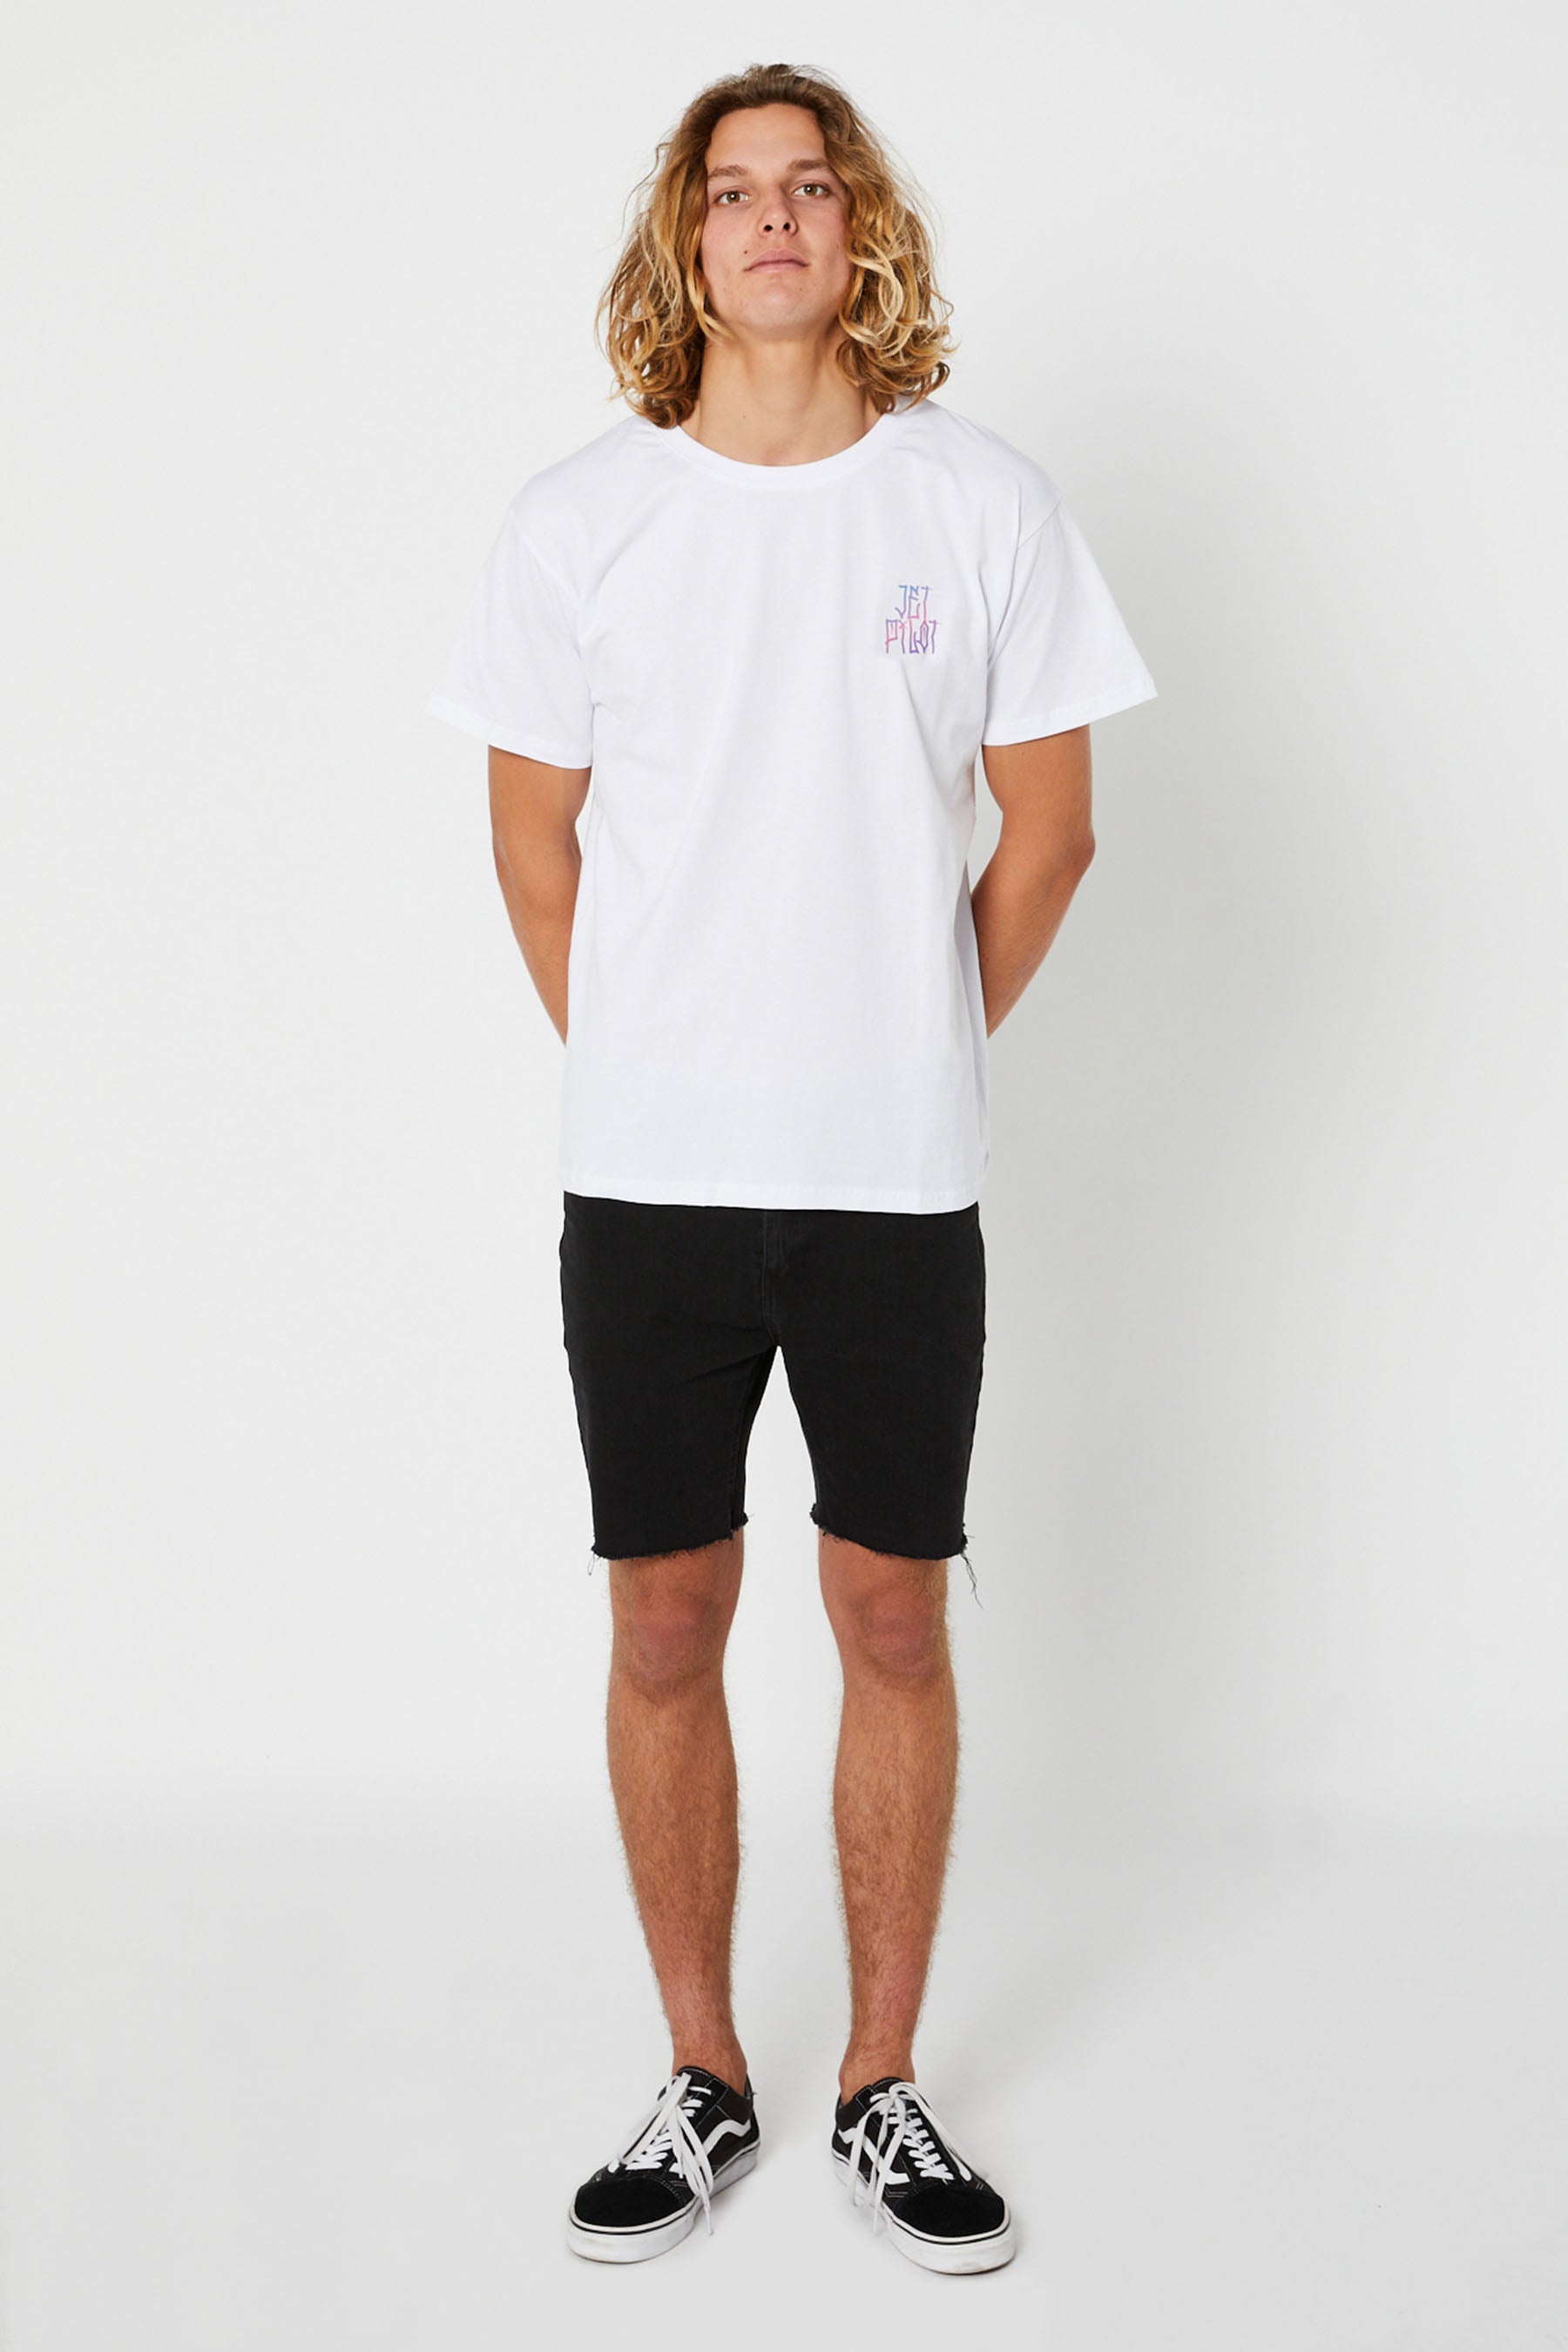 Jetpilot Full Send Mens S/S T-Shirt - White